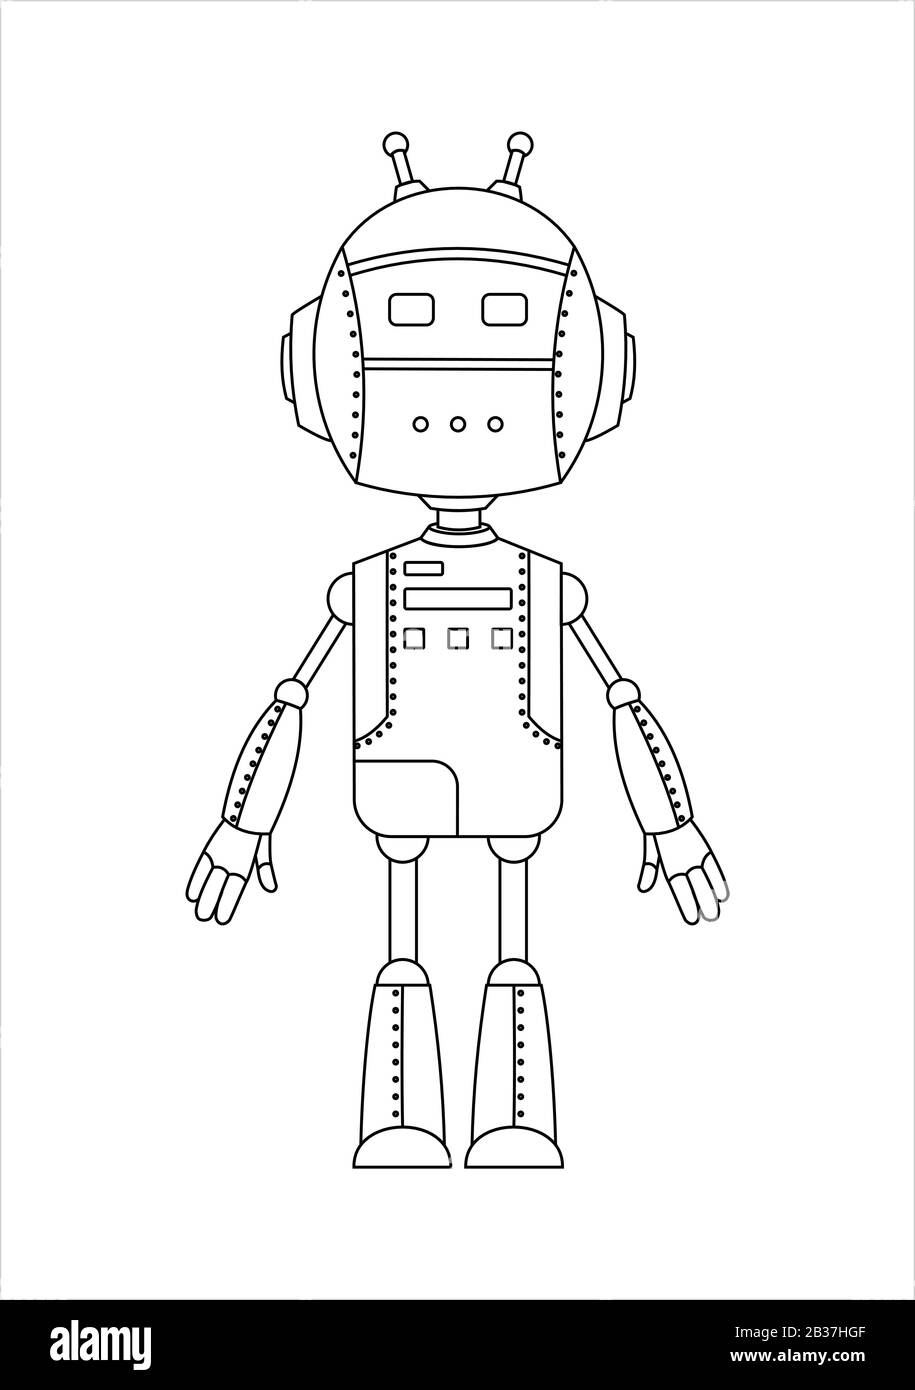 Personaggio Android Robot Di Profilo Con Due Antenne. Illustrazione Vettoriale